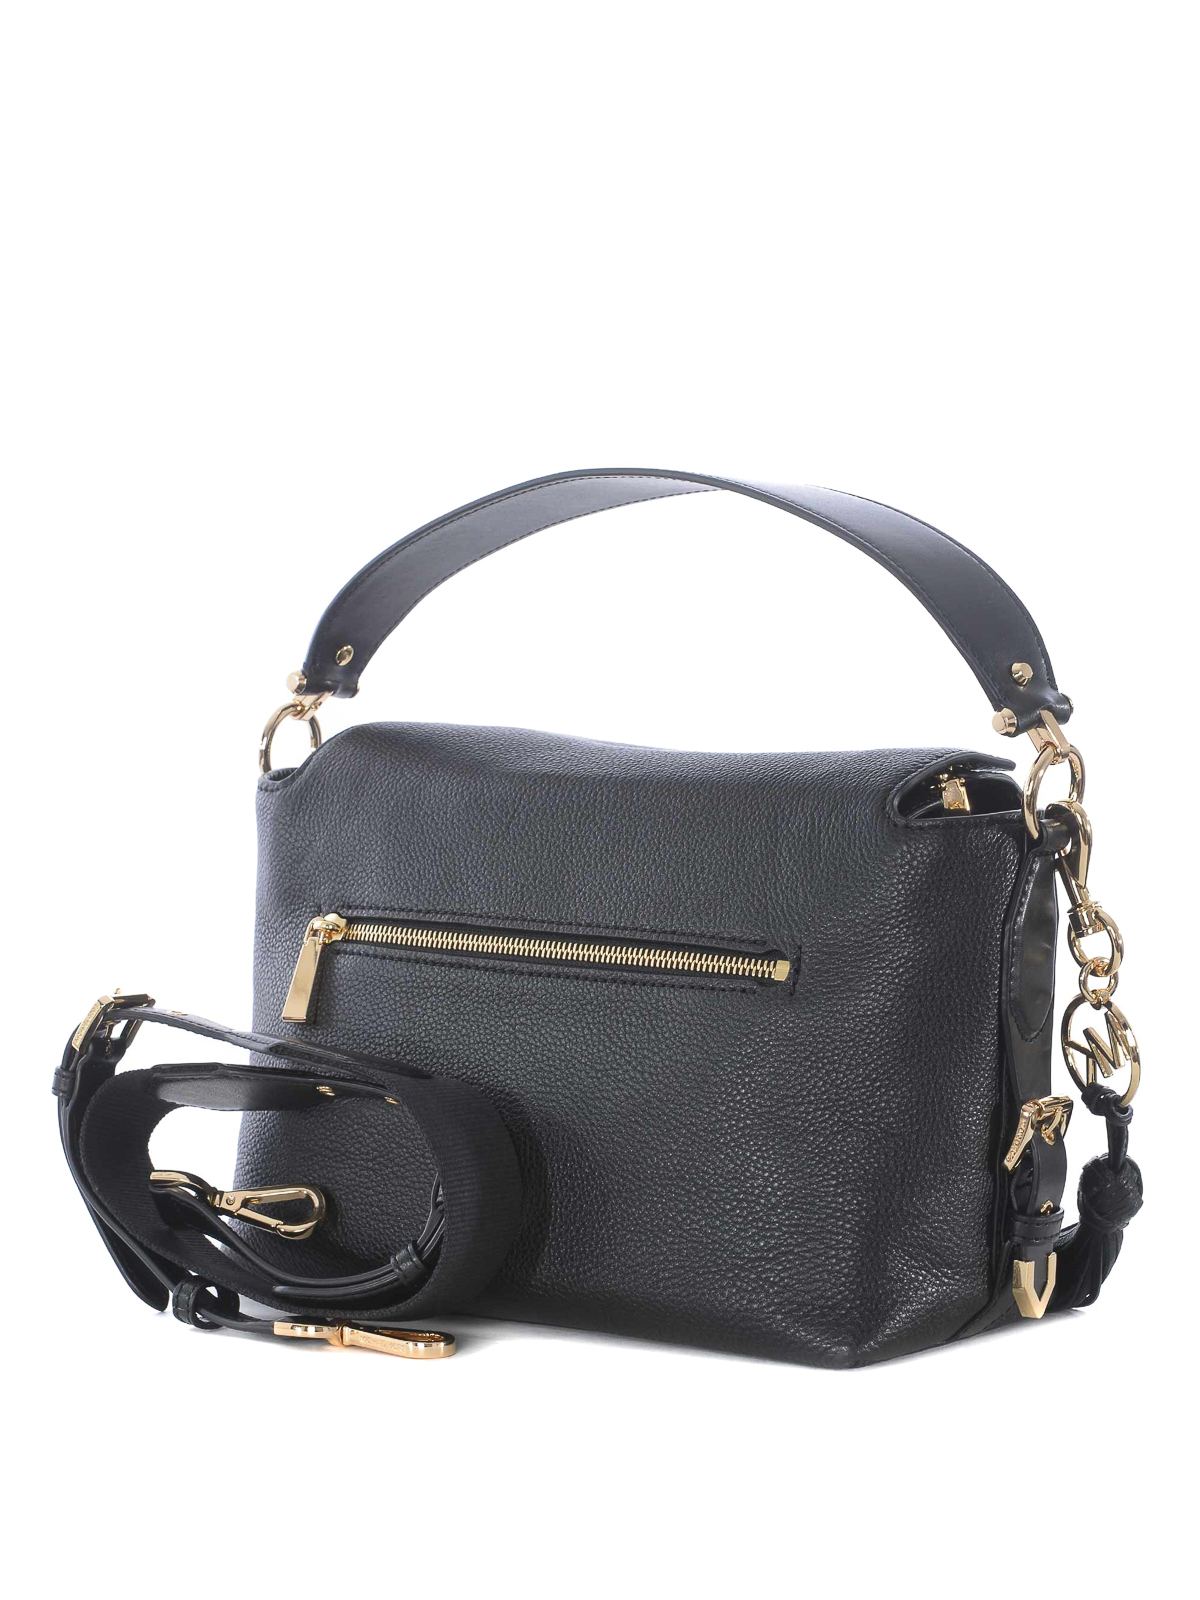 Shoulder bags Michael Kors - Brooke M black hammered leather bag -  30S9GOKS2L001